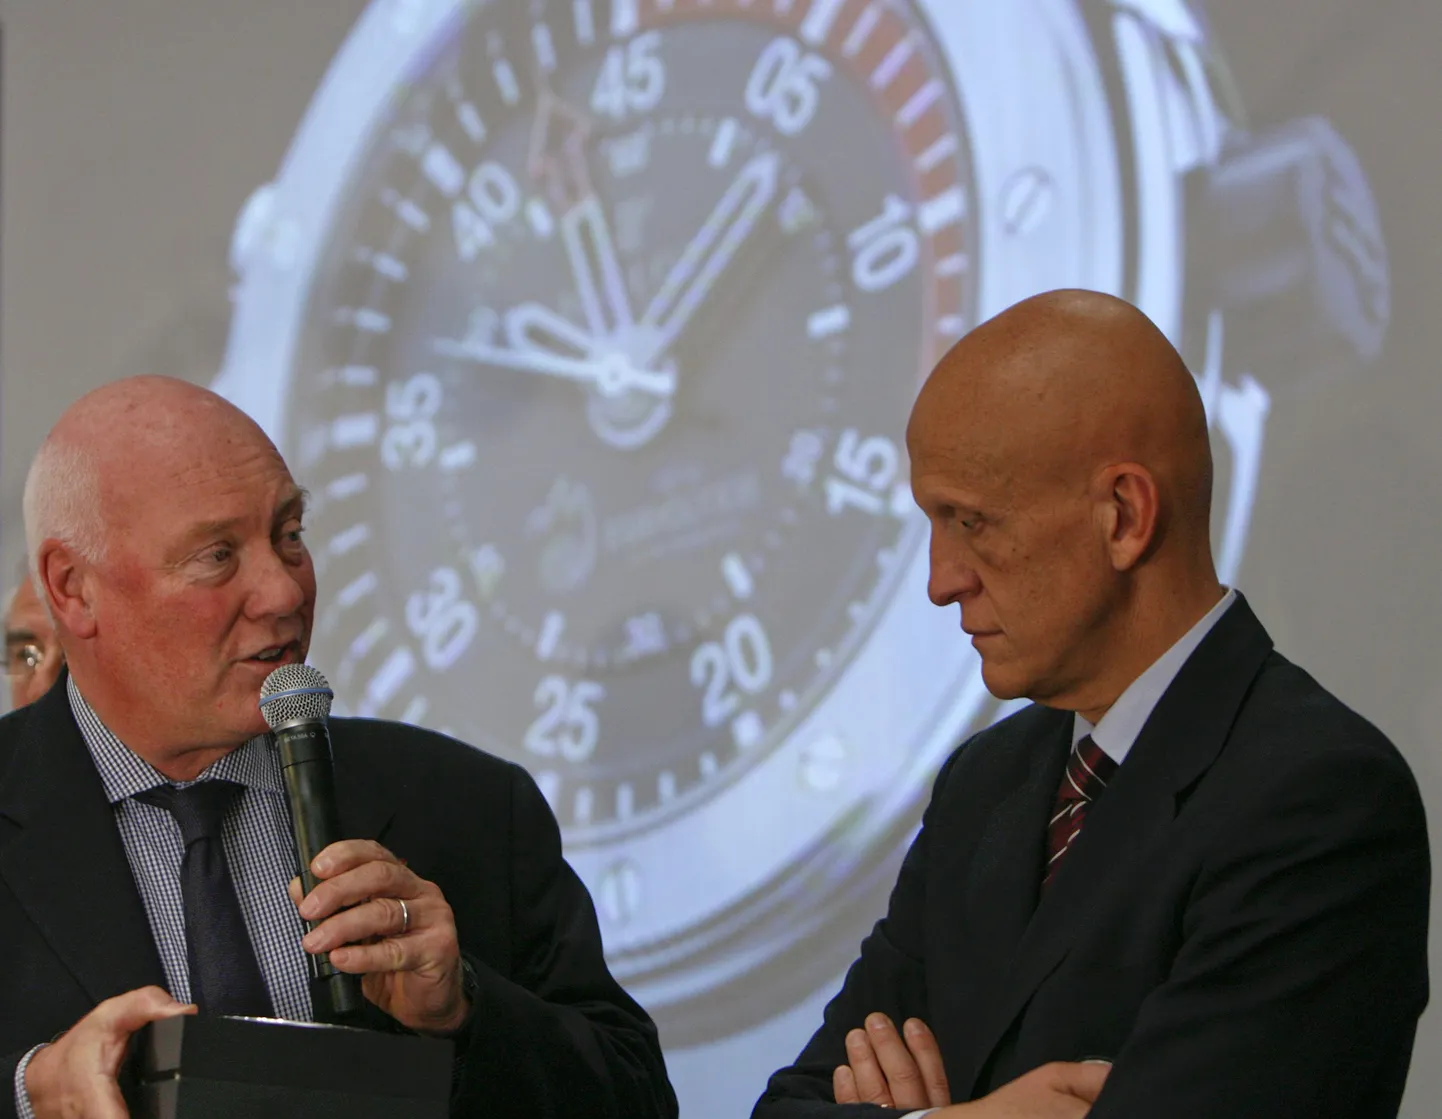 Šveitsi kellafirma Hublot juht Jean-Claude Biver ja endine jalgpallikohtunik Pierluigi Collina EURO 2008 kohtunike kella tutvustamisel